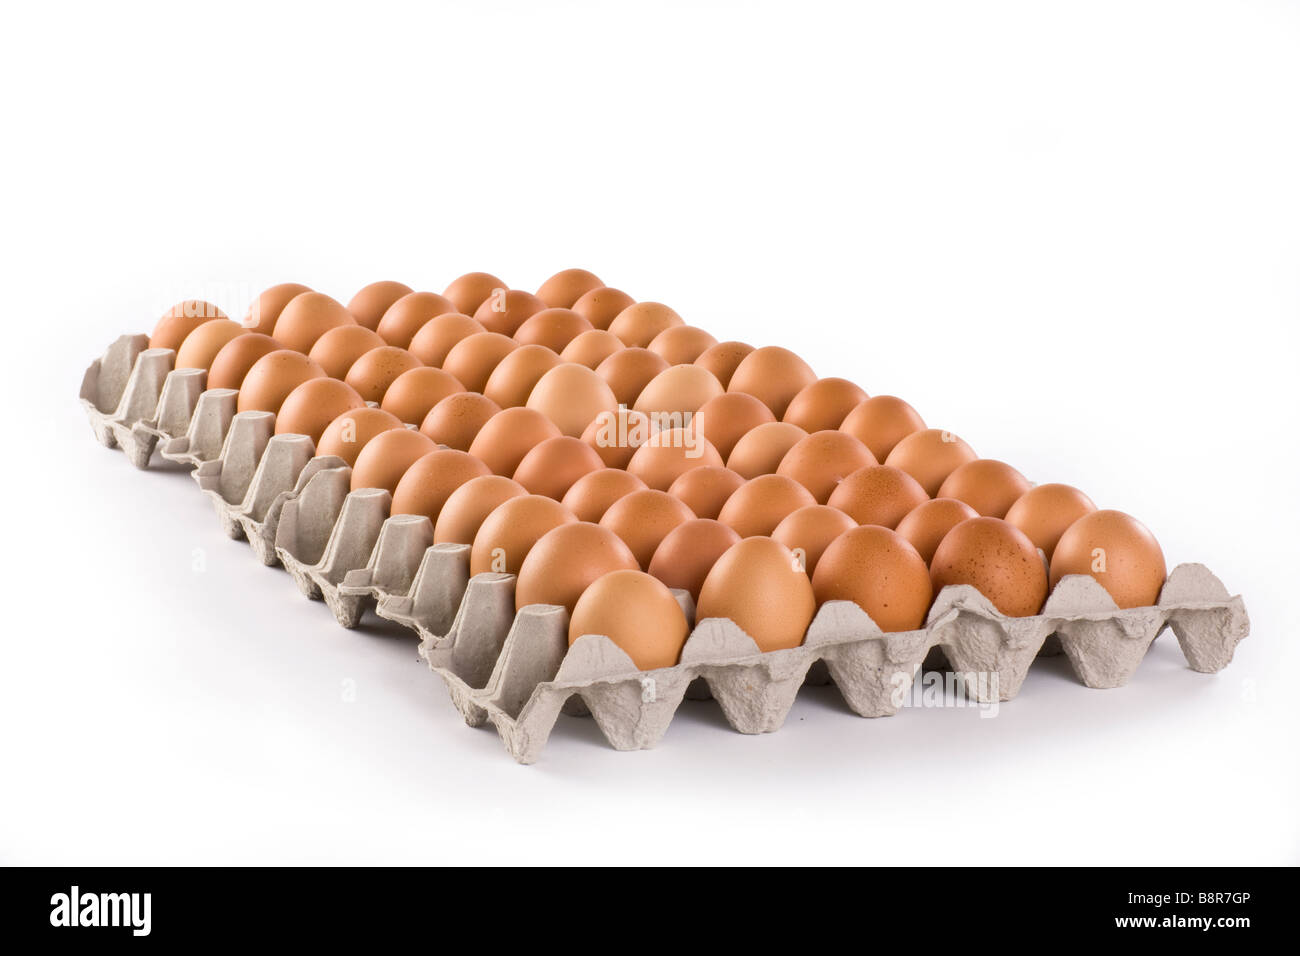 Uova di colore marrone in una scatola di cartone carta isolato su sfondo bianco Foto Stock